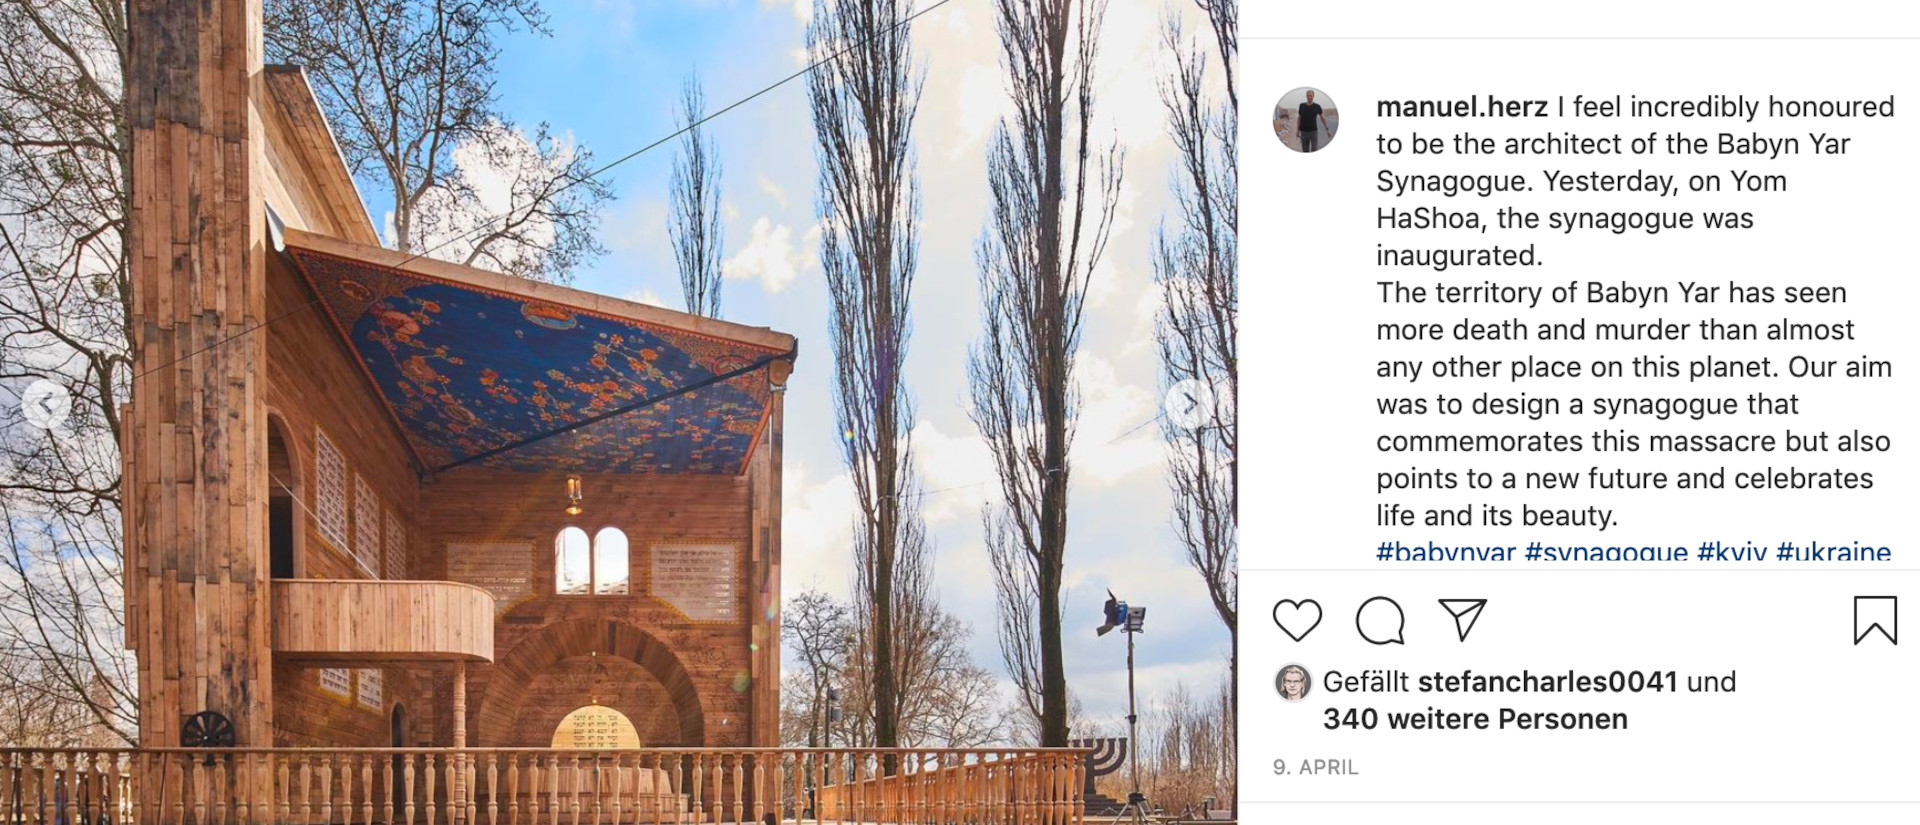 Auf Instagram informiert der Basler Architekt Manuel Herz über das Gedenken an Babyn Yar.